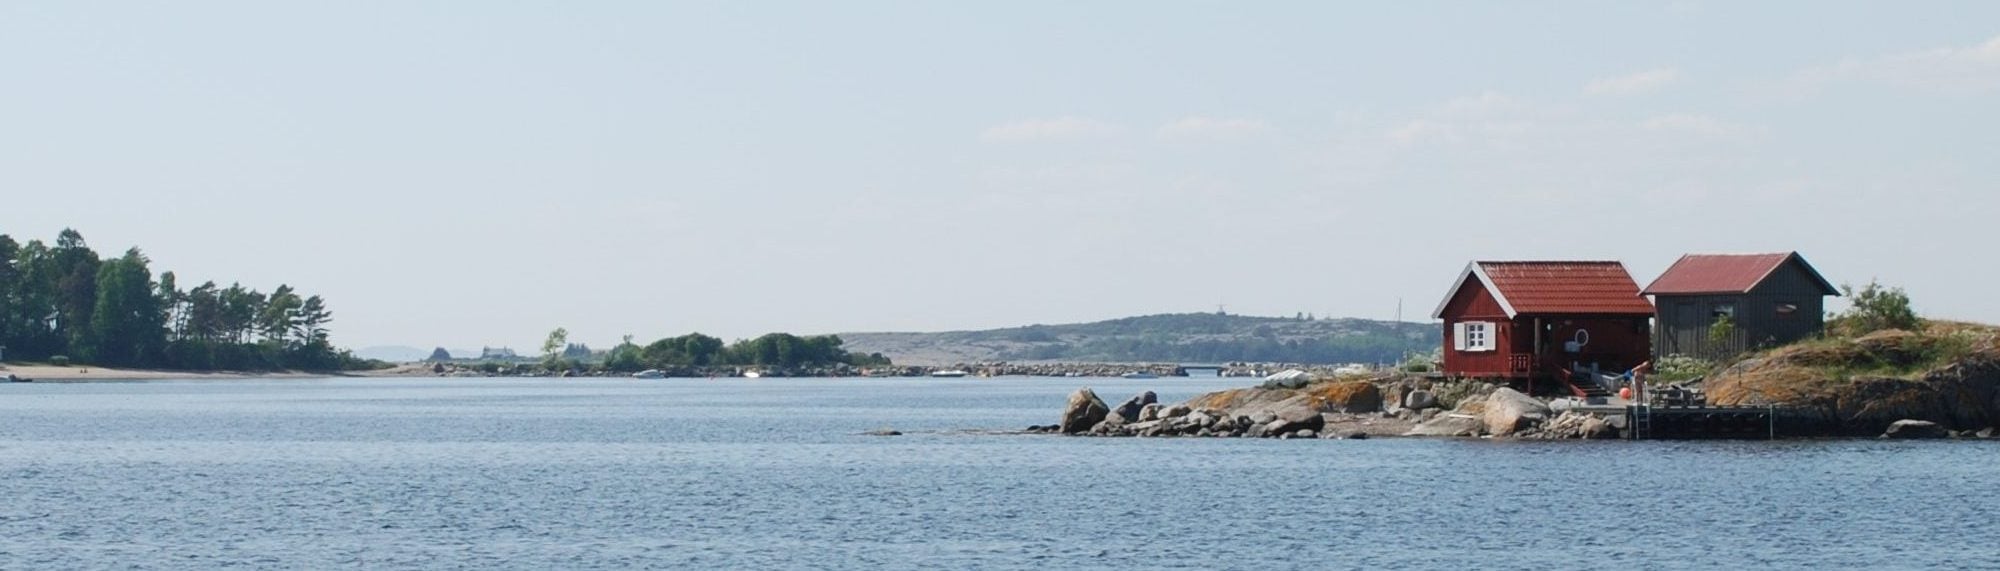 Bilde av kystlinjen i Helgeroa